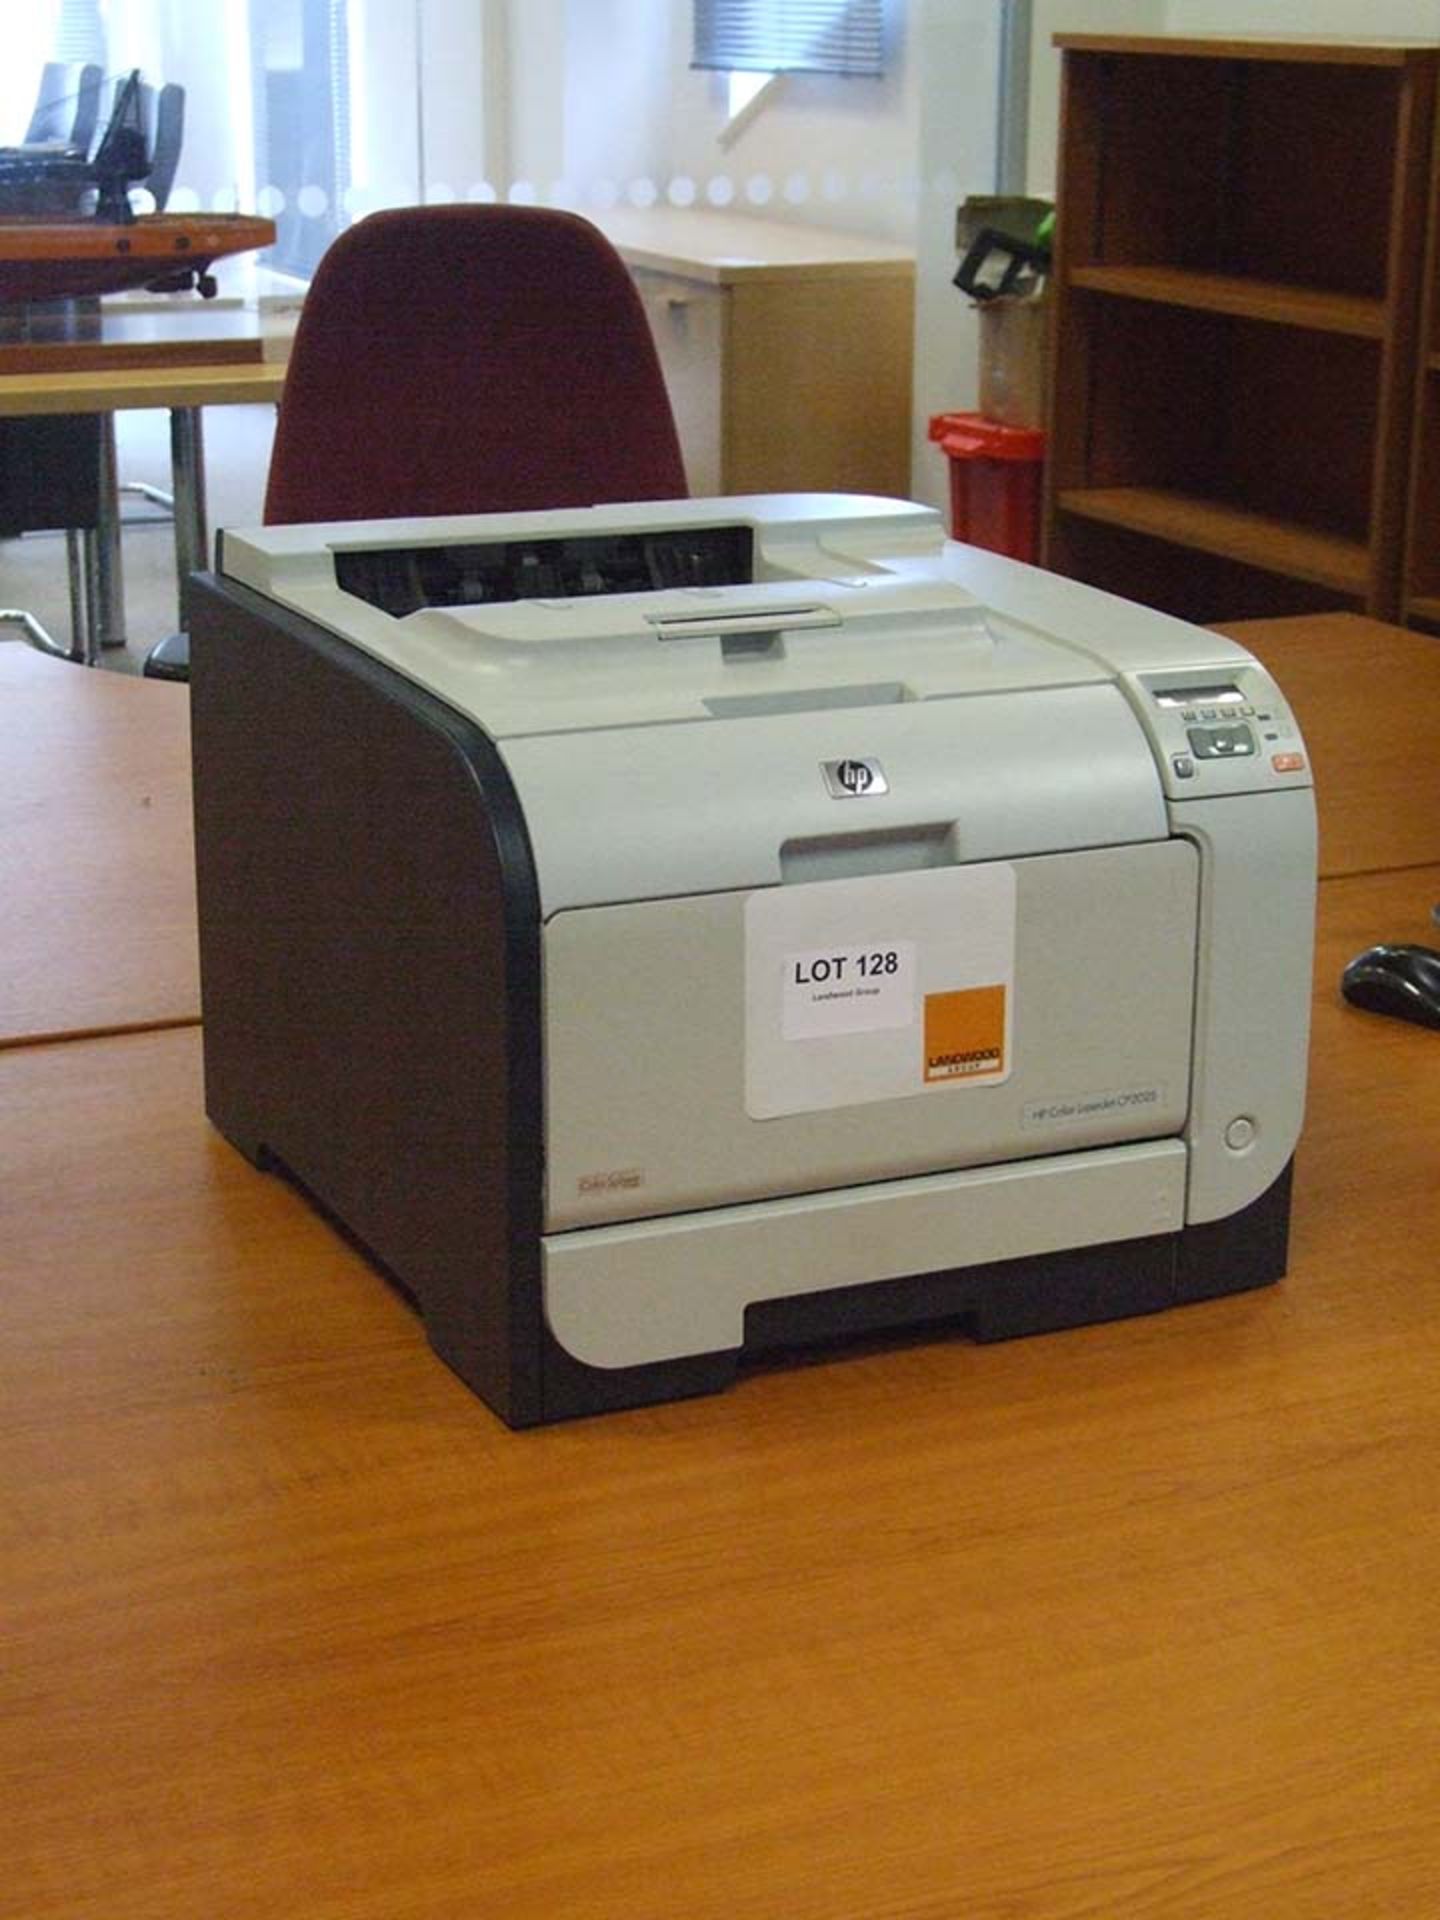 HP Colour Laserjet CP2025 Network printer